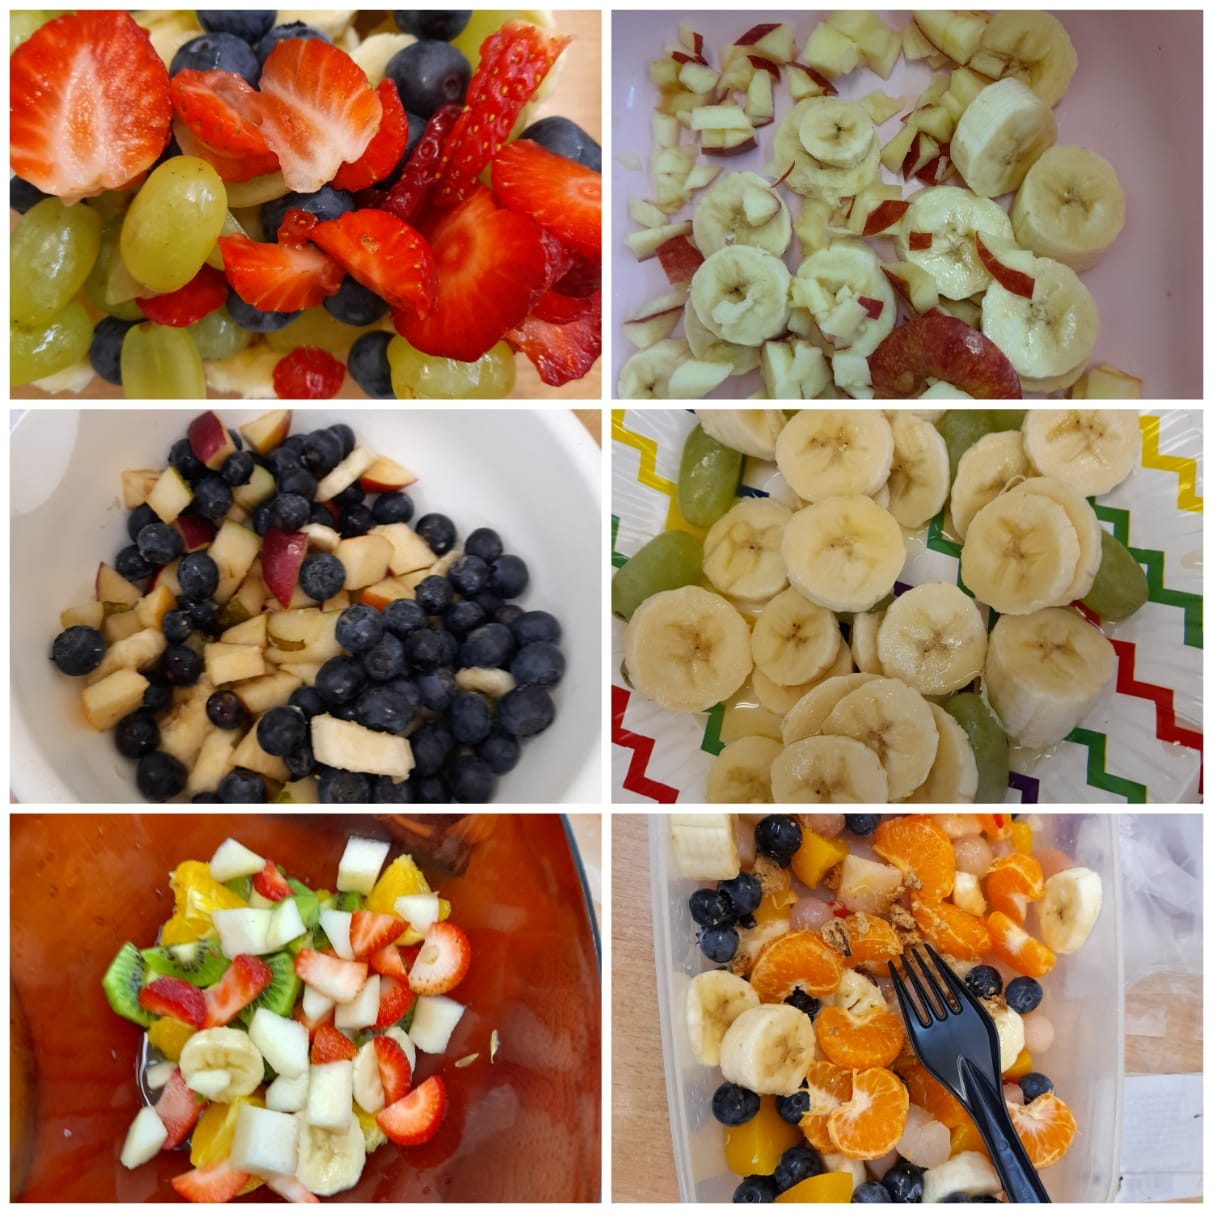 Zdjęcia kolorowych sałatek owocowych przygotowanych przez dzieci, banany, kiwi, truskawki